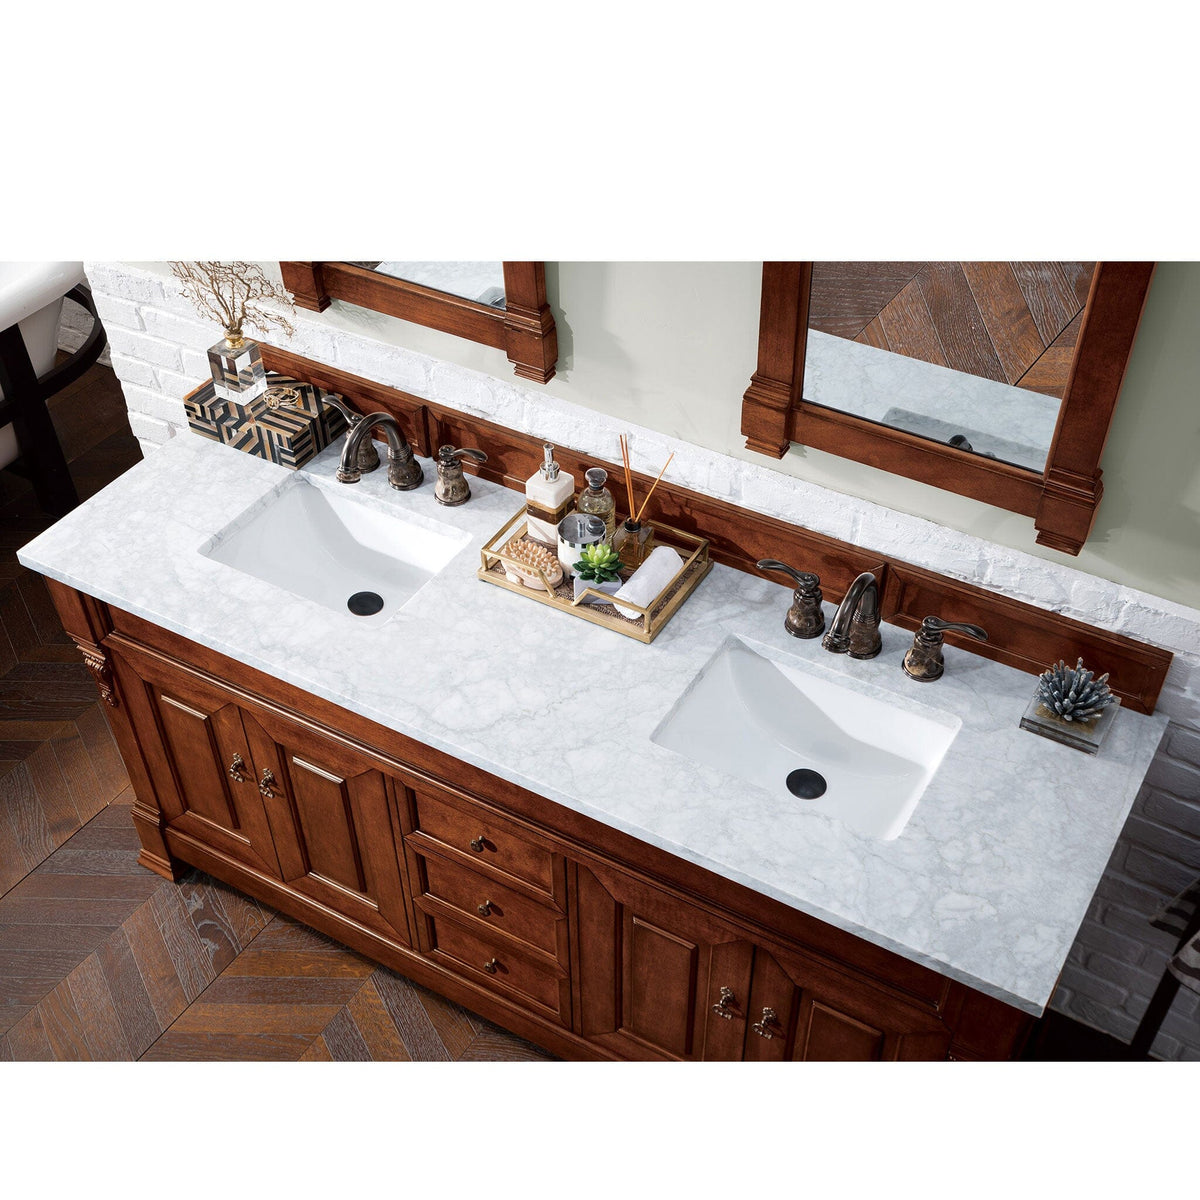 72" Brookfield Double Bathroom Vanity, Warm Cherry - vanitiesdepot.com